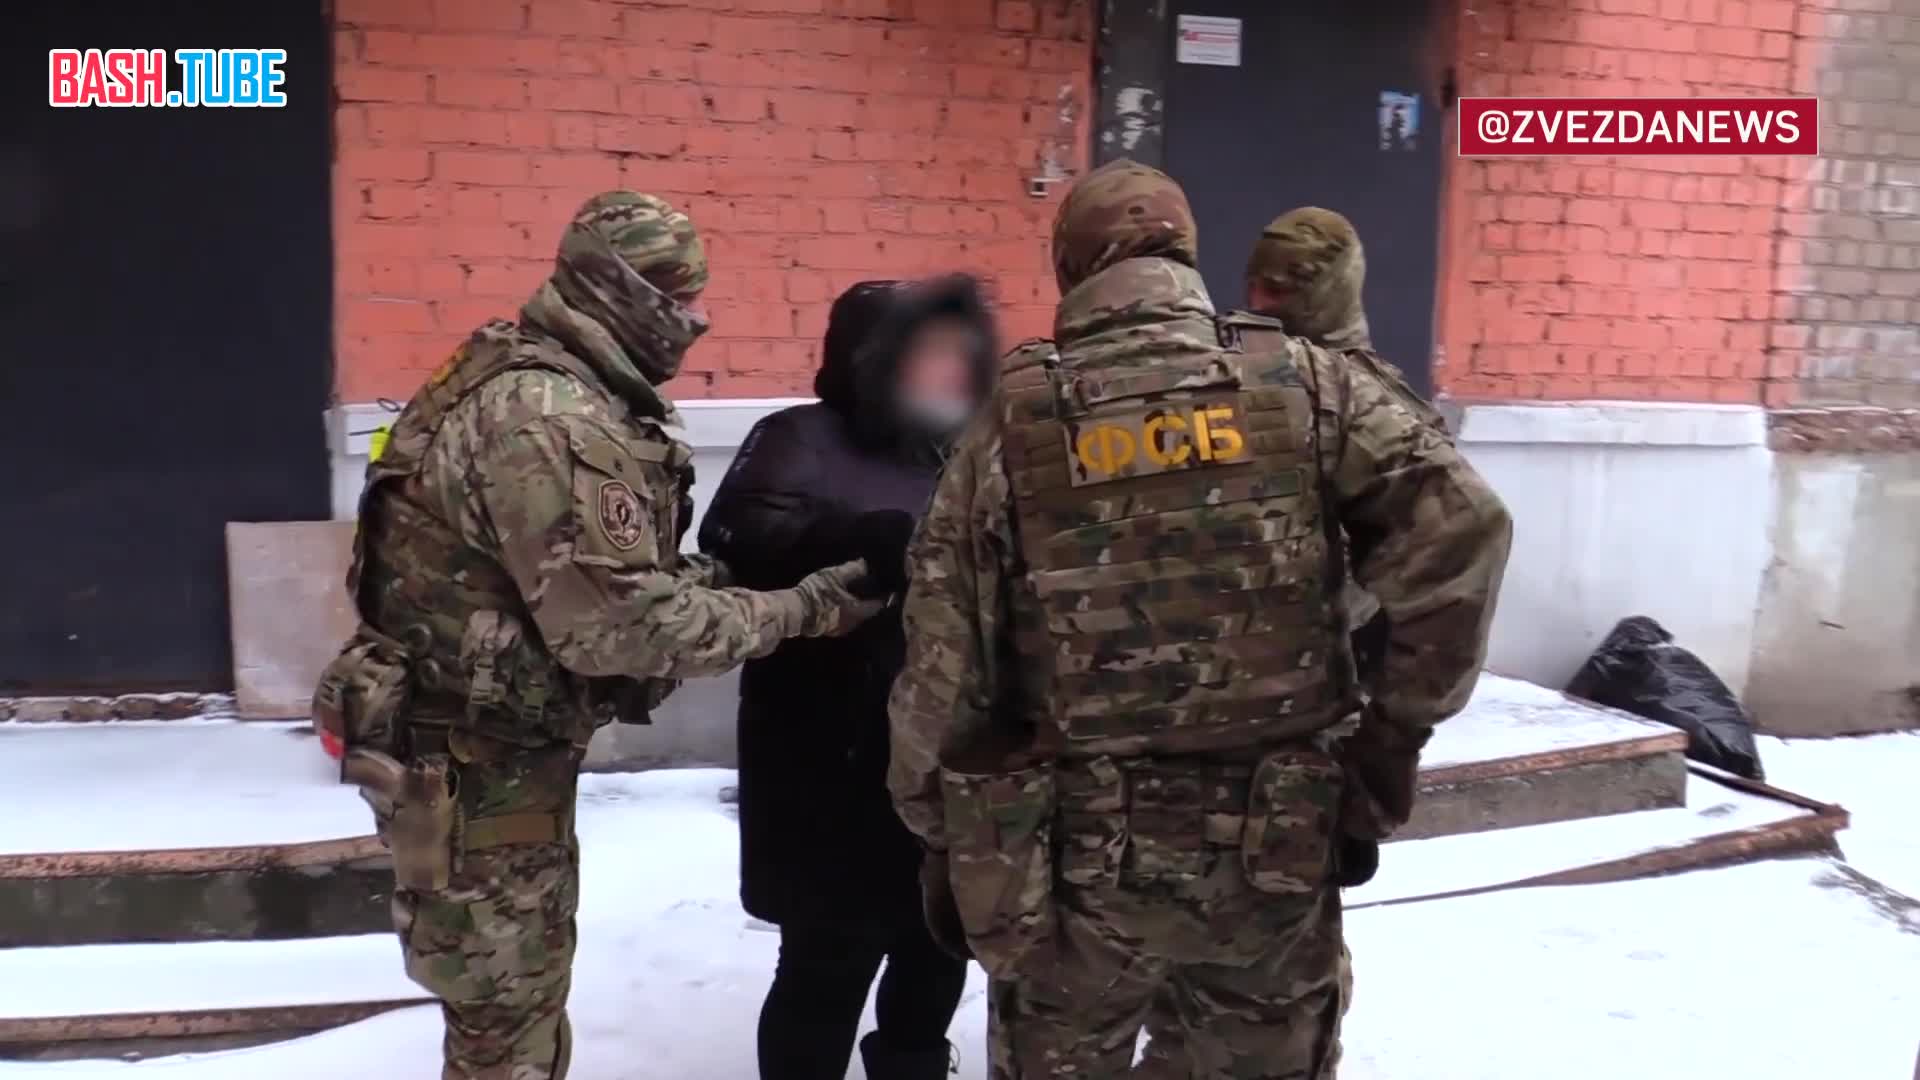  Пособница СБУ в Самаре склоняла участников спецоперации к переходу на сторону противника, но была задержана сотрудниками ФСБ